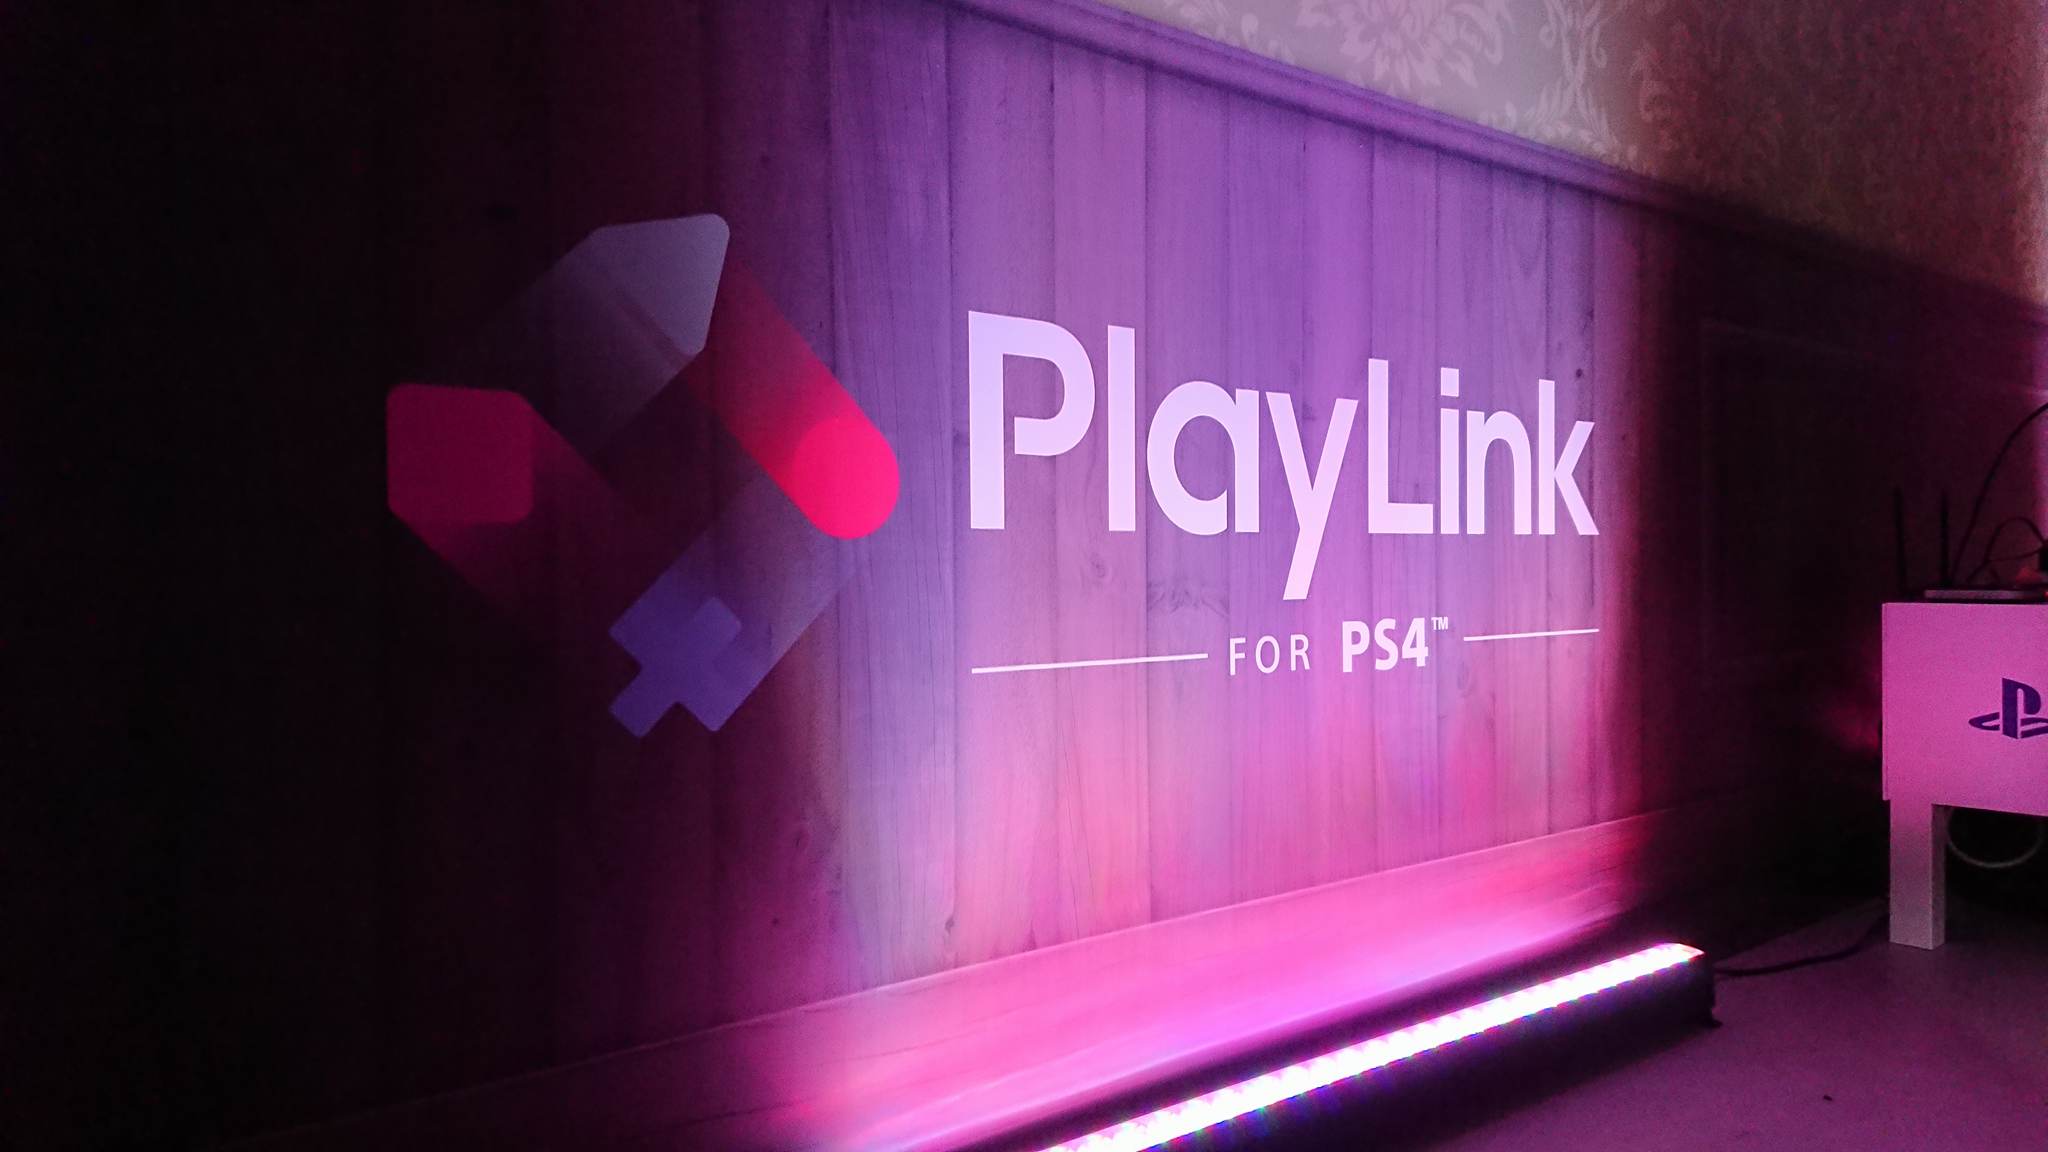 PlayStation prezentuje technologię PlayLink wraz z tytułem startowym ‘To Jesteś Ty!’